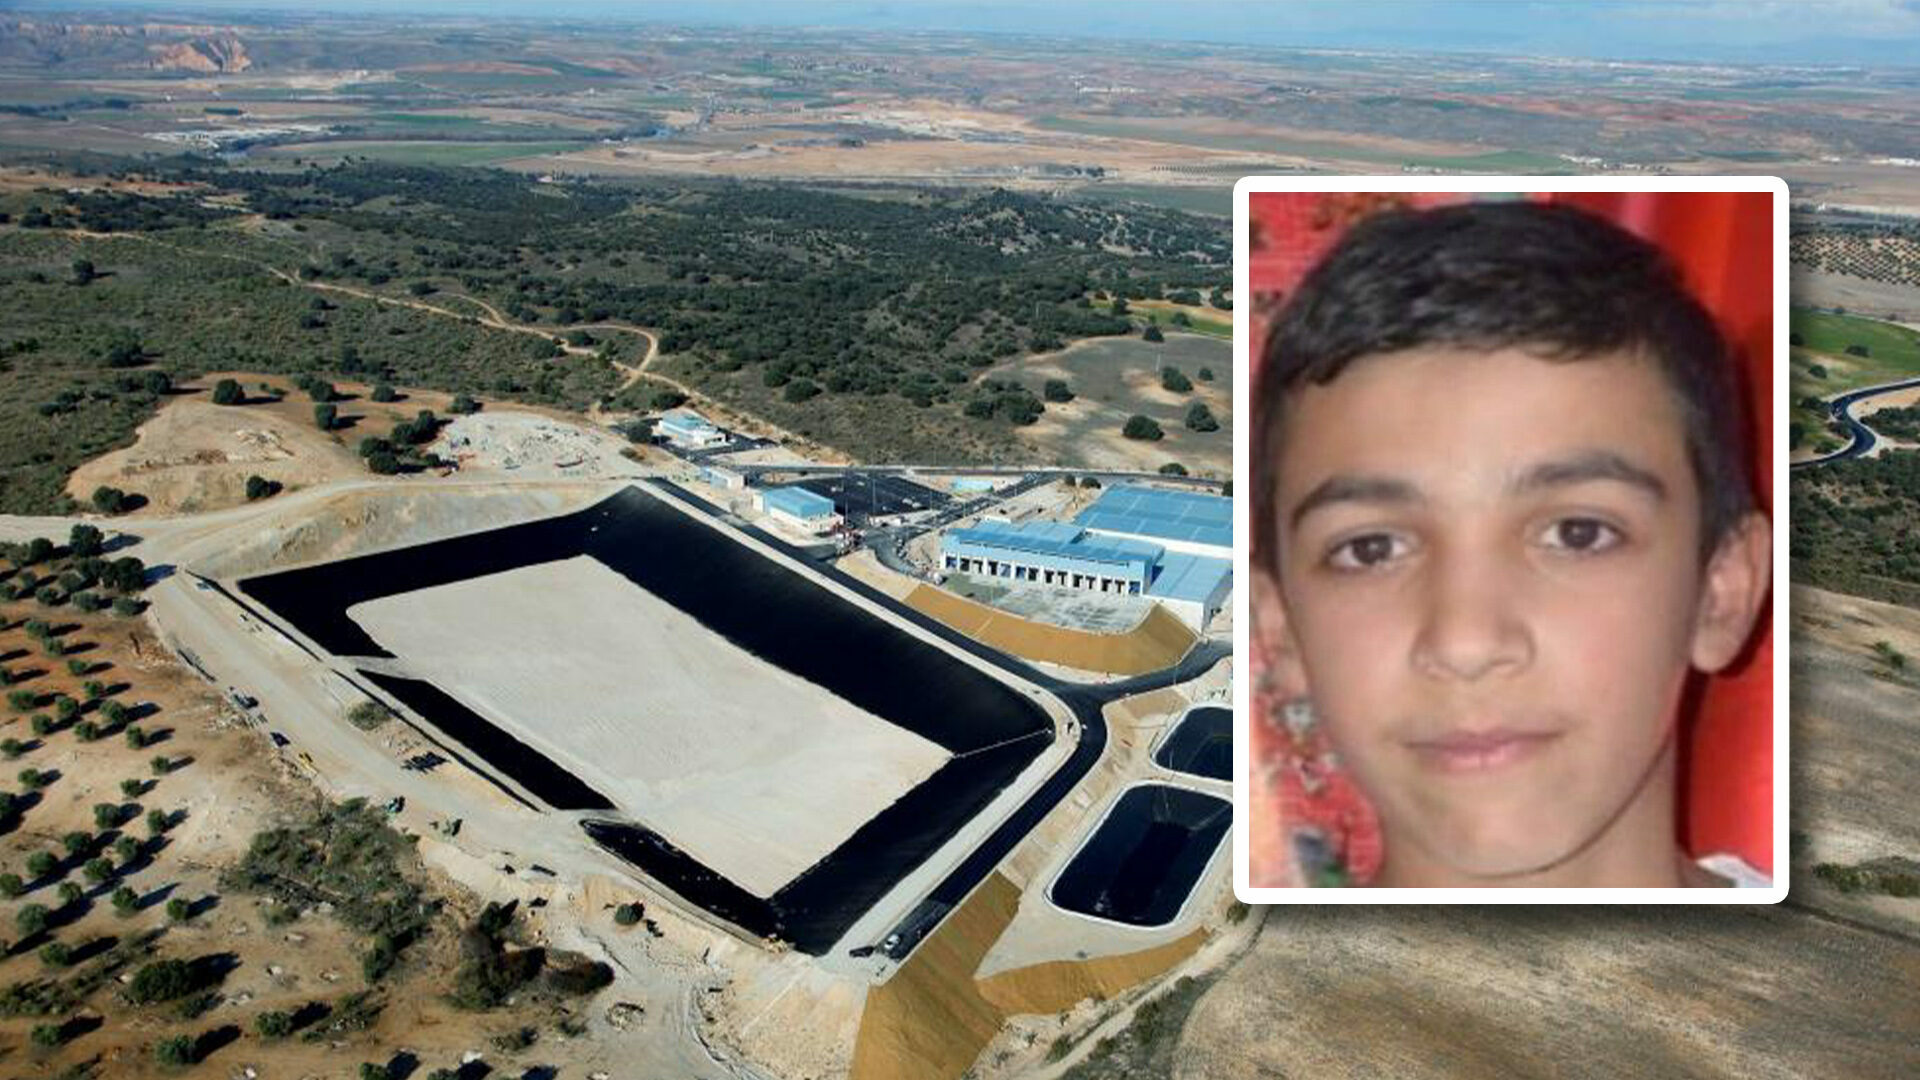 La cara de Ángel, el menor de 11 años desaparecido cuyos restos busca la Policía Nacional en un vertedero en Toledo